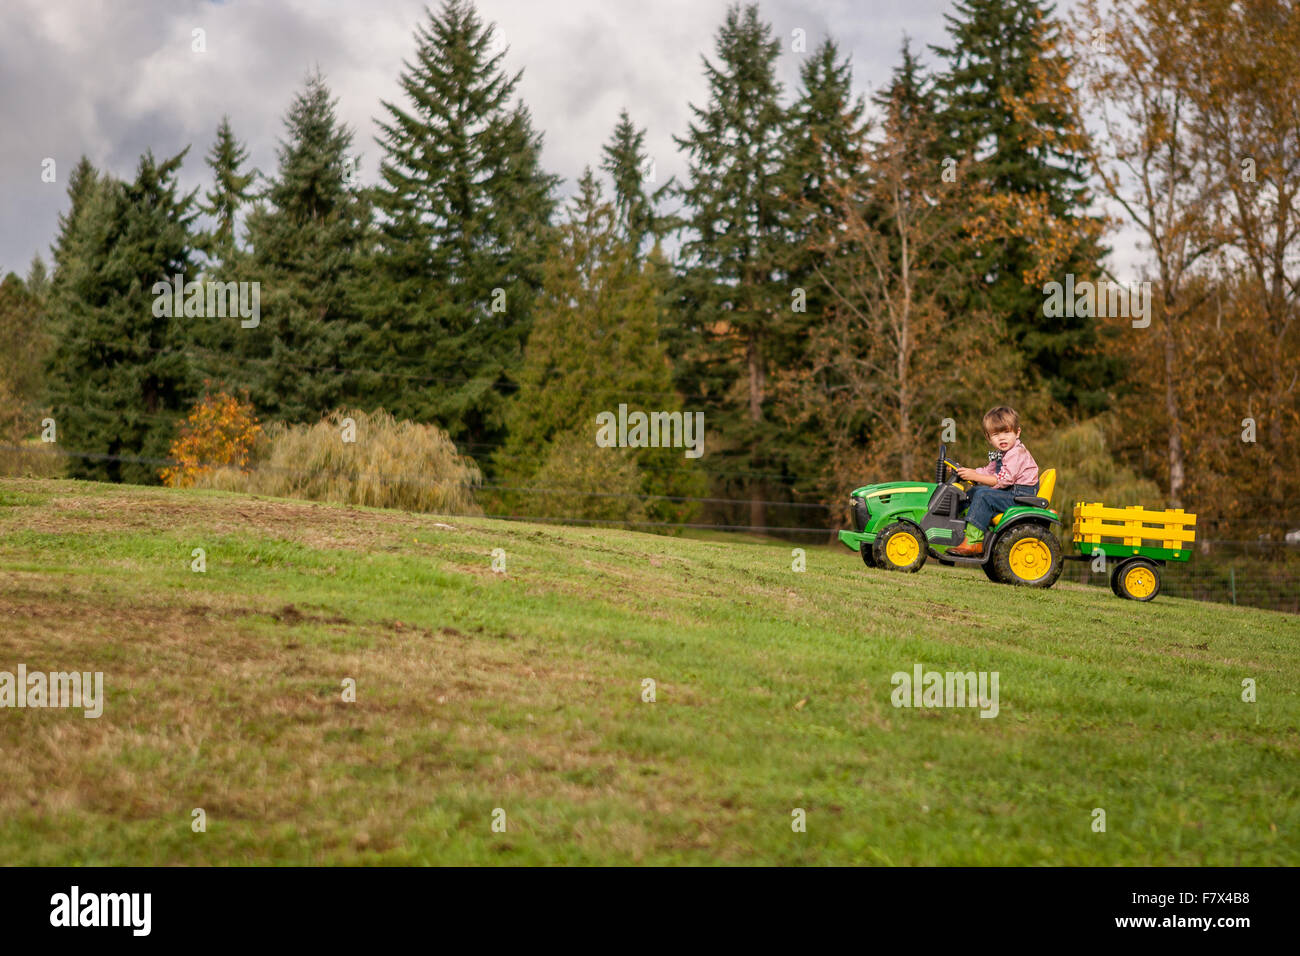 Junge einen Spielzeug-Traktor bergauf zu fahren Stockfoto